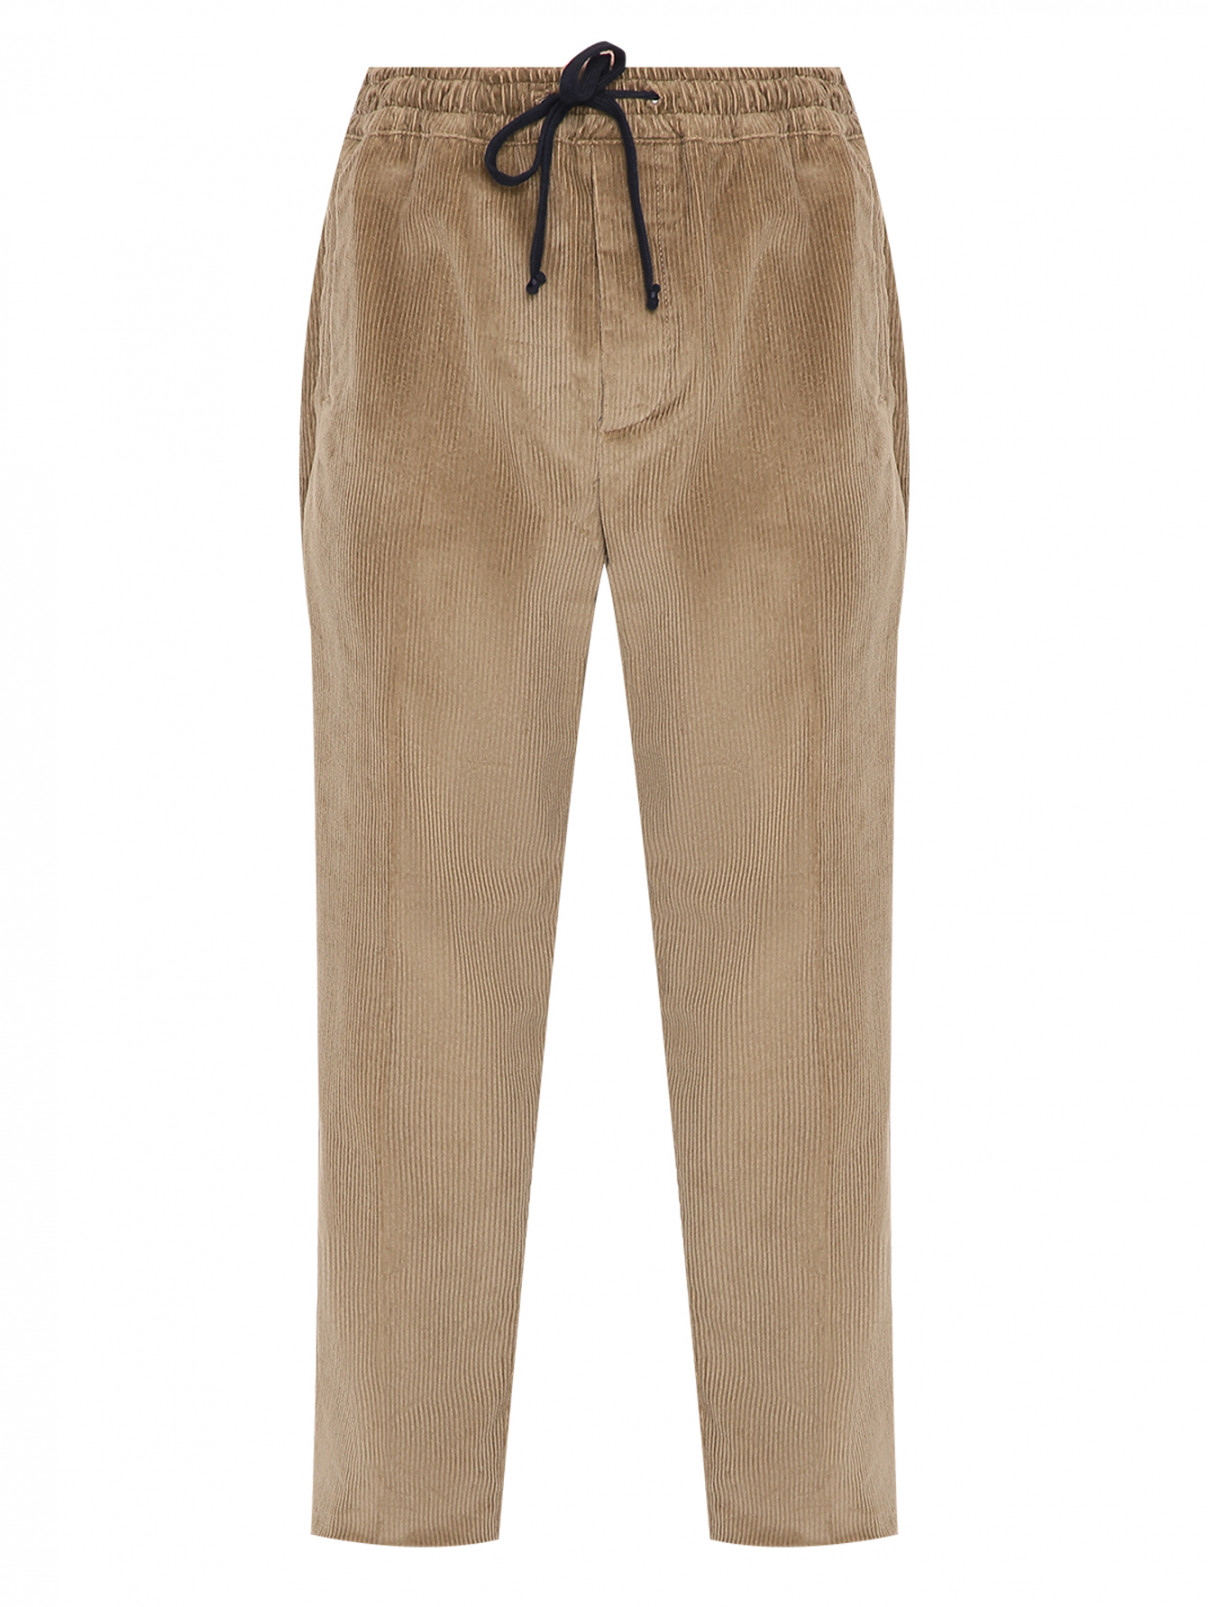 Вельветовые брюки из хлопка Altea  –  Общий вид  – Цвет:  Бежевый